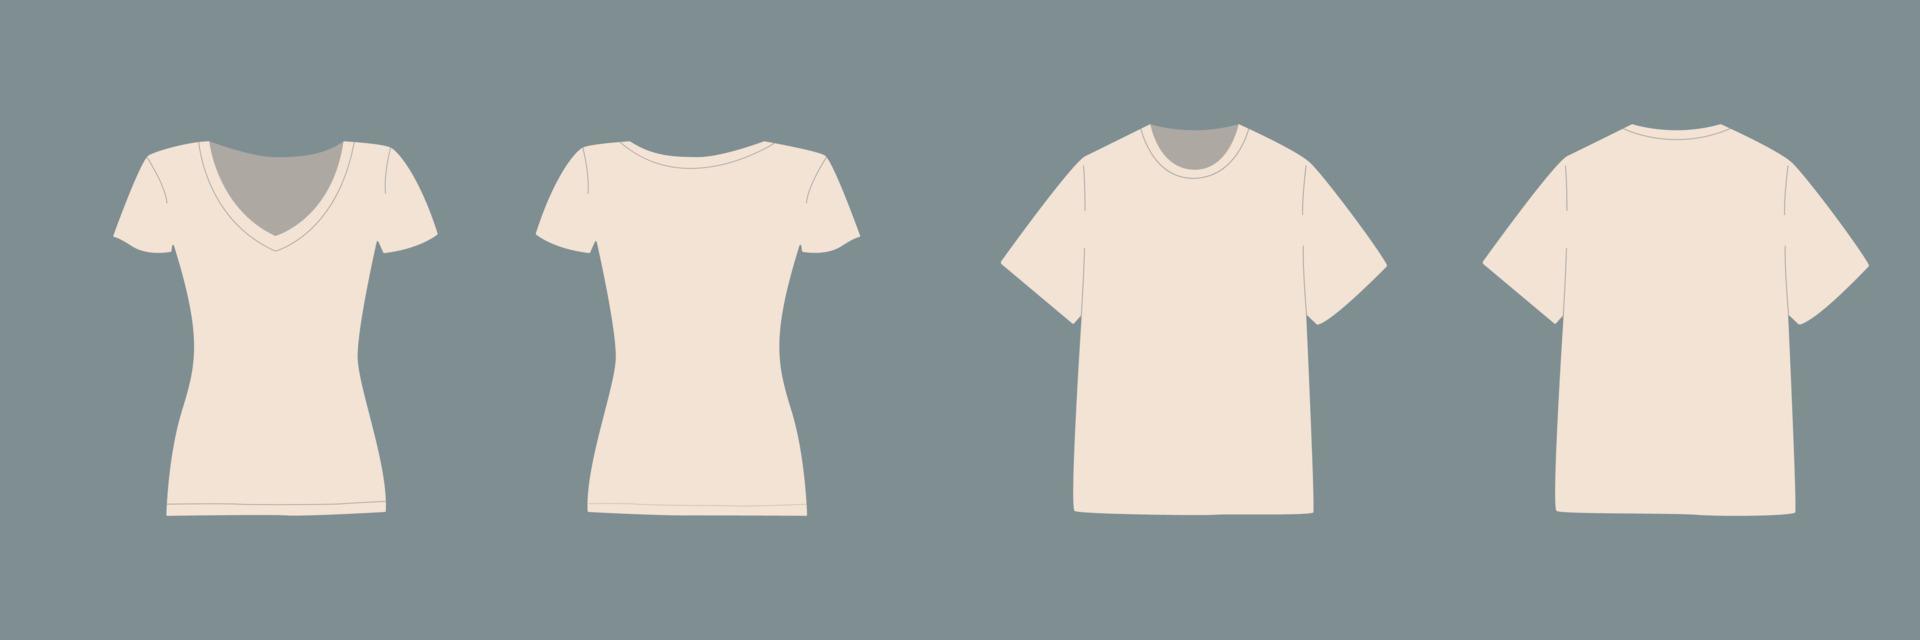 camiseta de manga corta para hombre y mujer. colocar. maqueta básica en la vista frontal y posterior. ropa de plantilla sobre fondo gris. ilustración vectorial vector